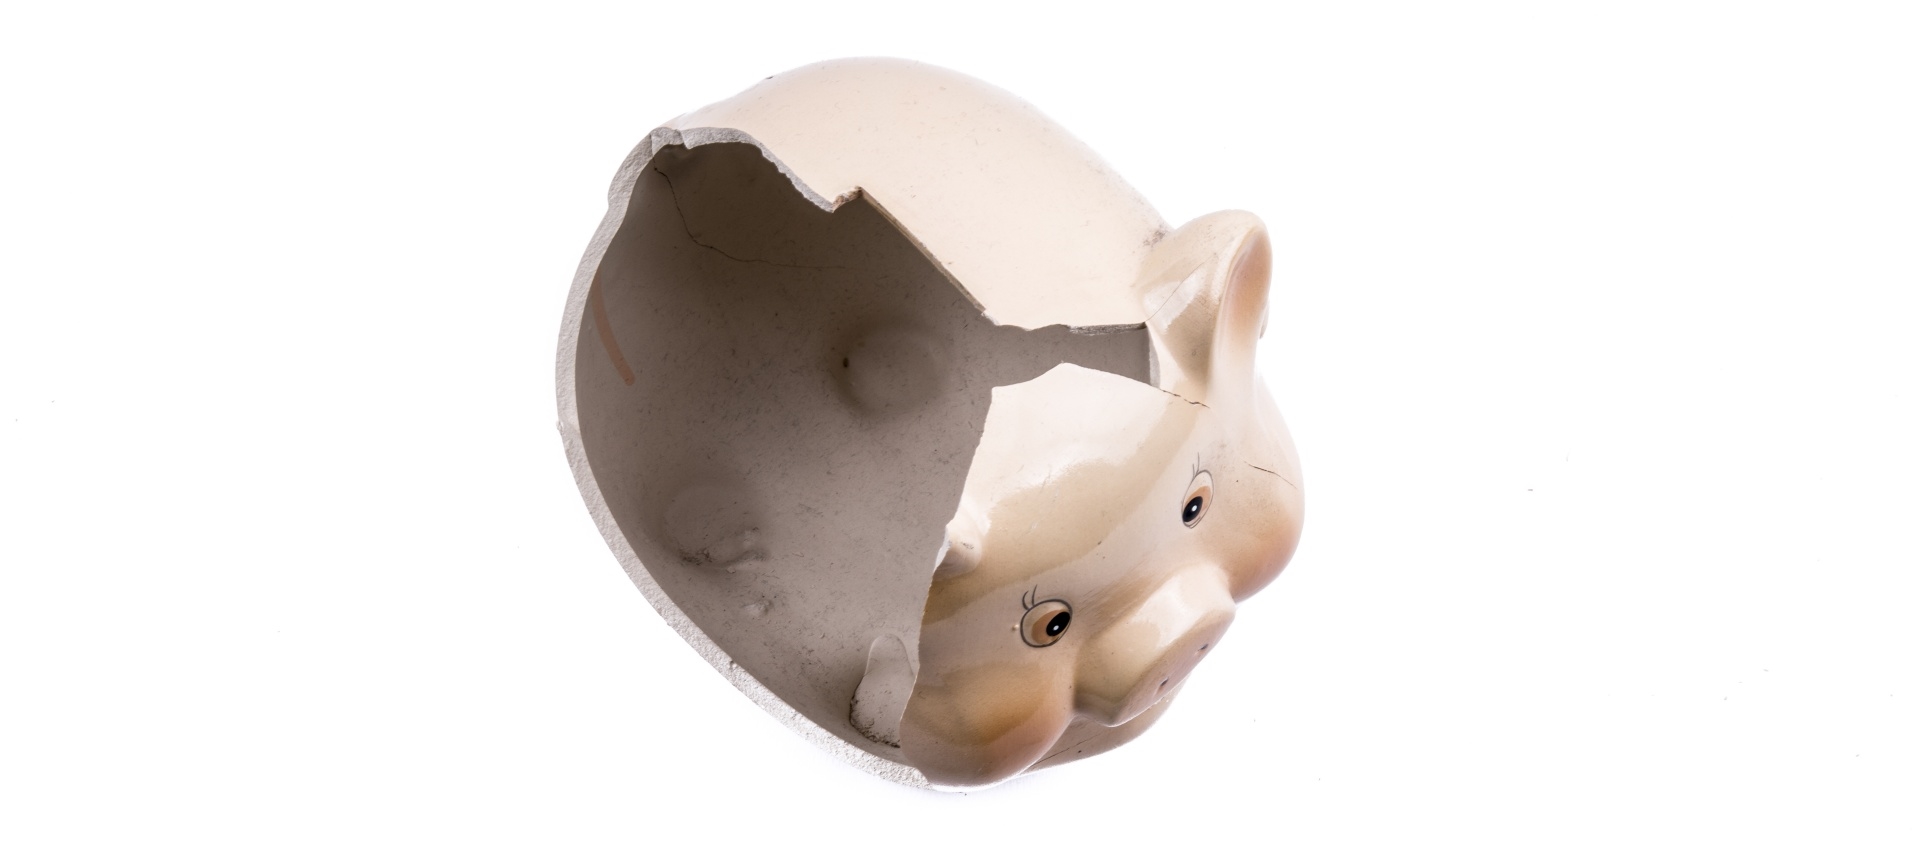 Image of a broken piggy bank